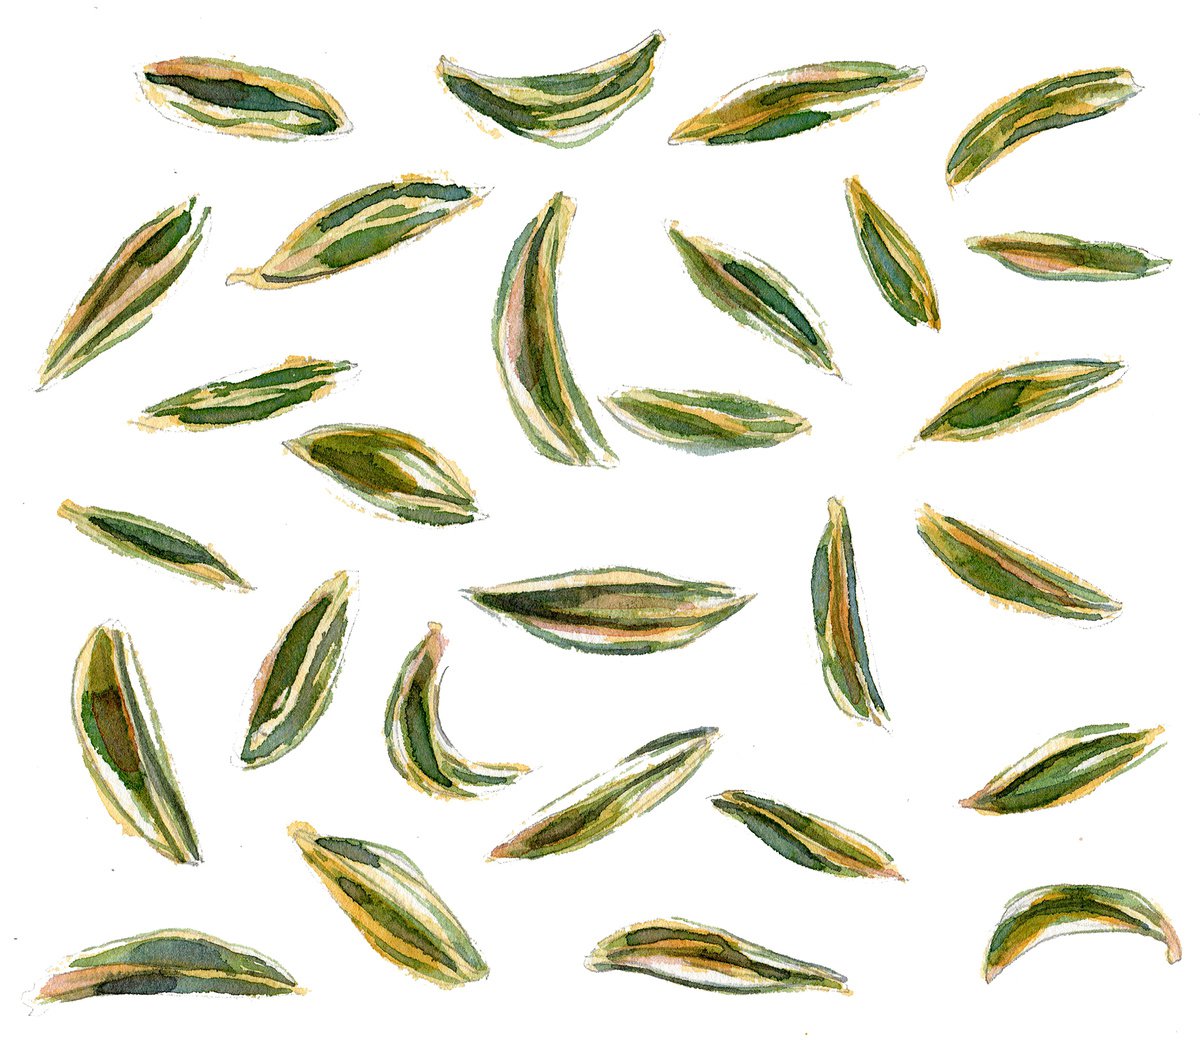 Cumin seeds by Hannah Clark